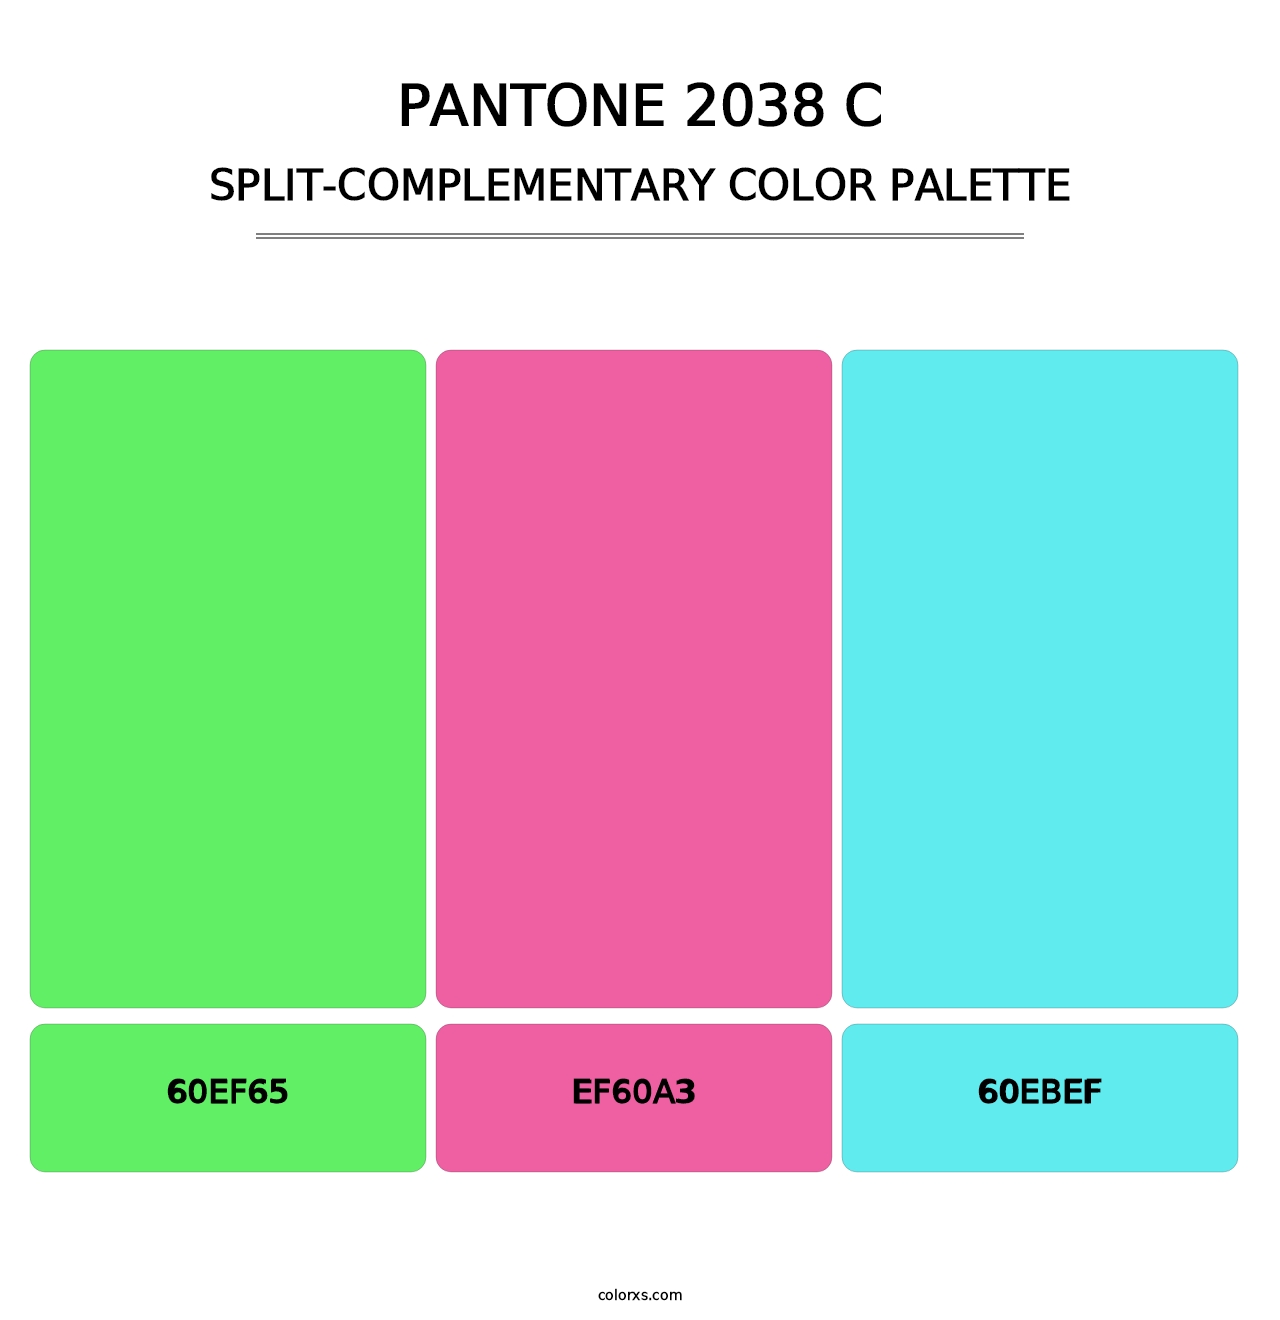 PANTONE 2038 C - Split-Complementary Color Palette